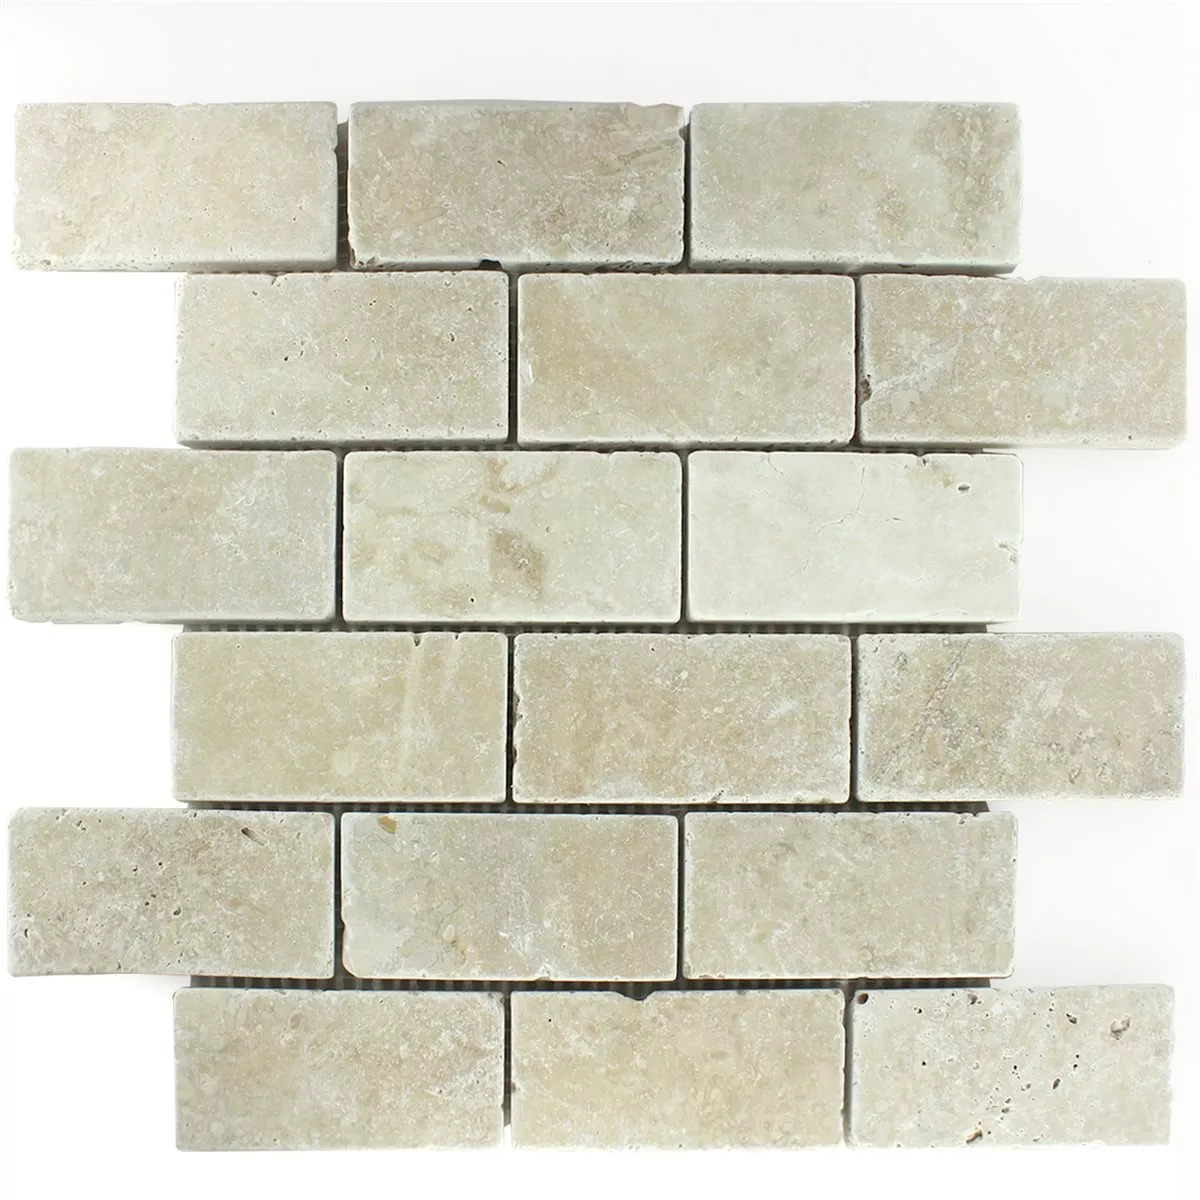 Είδος Ασβεστόλιθου Ψηφιδωτό Πλακάκι Bugio Chiaro Brick